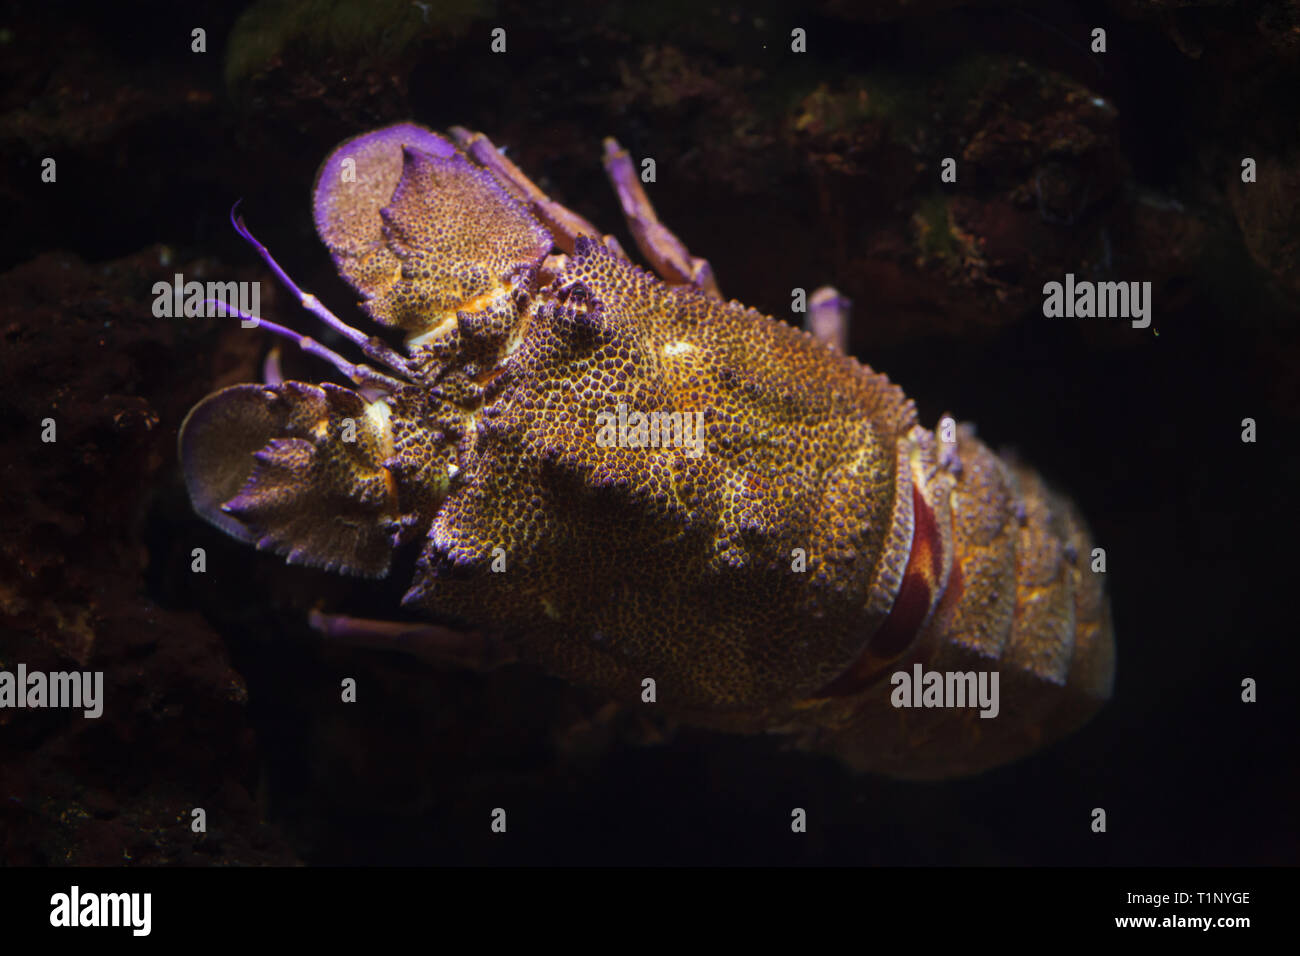 Mediterranean slipper lobster (Scyllarides latus), also known as the Mediterranean locust lobster. Stock Photo